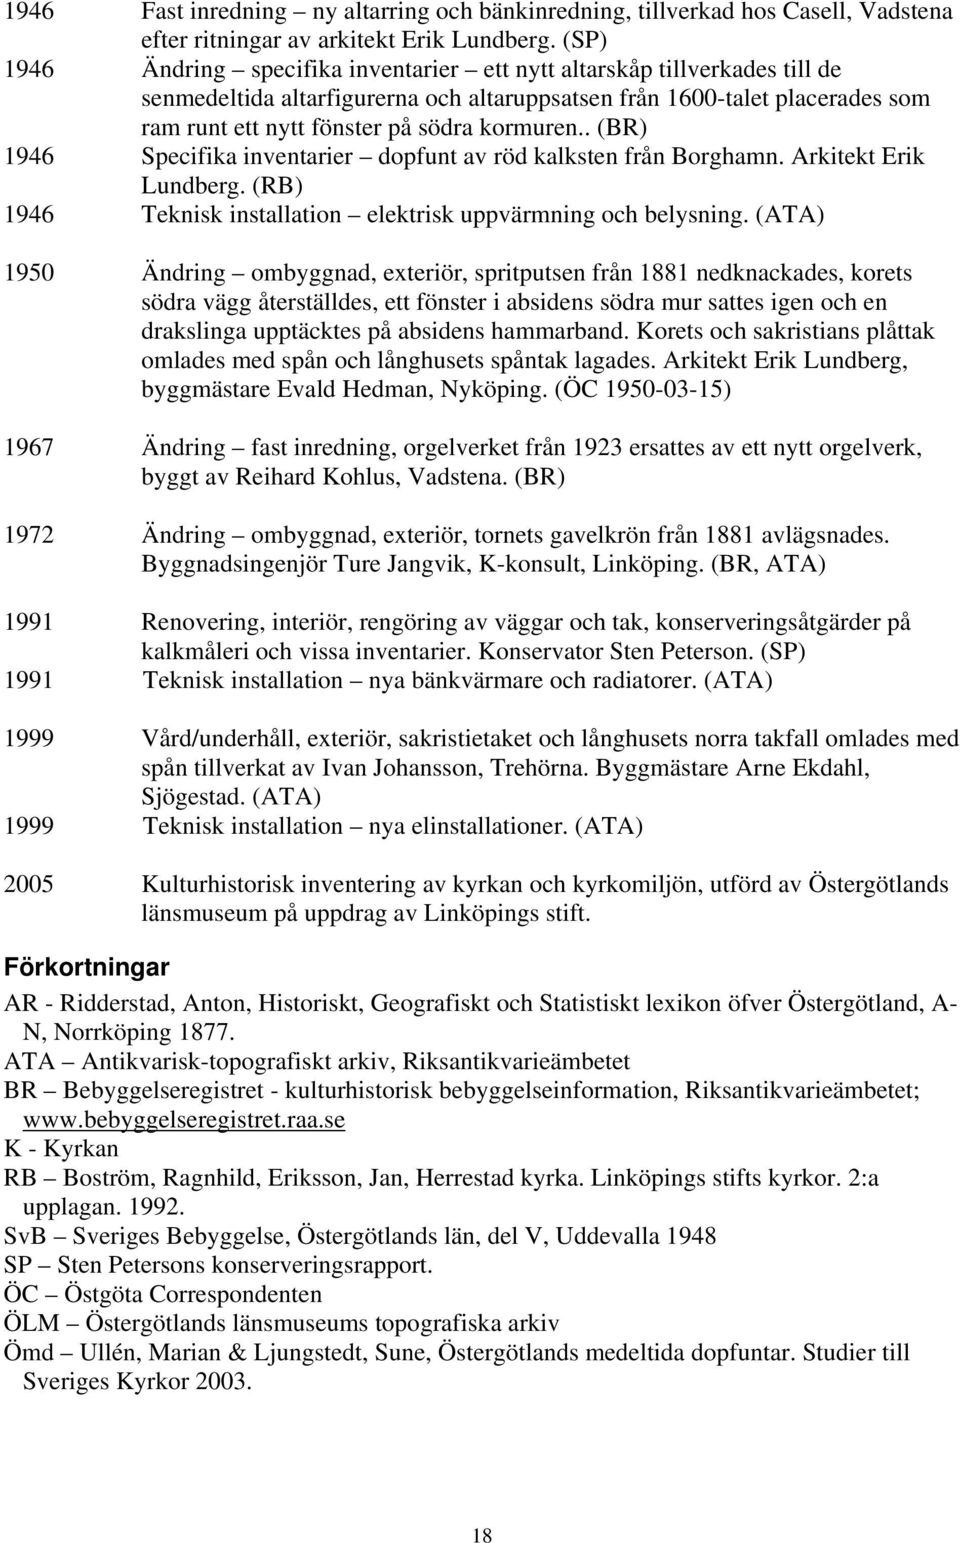 kormuren.. (BR) 1946 Specifika inventarier dopfunt av röd kalksten från Borghamn. Arkitekt Erik Lundberg. (RB) 1946 Teknisk installation elektrisk uppvärmning och belysning.